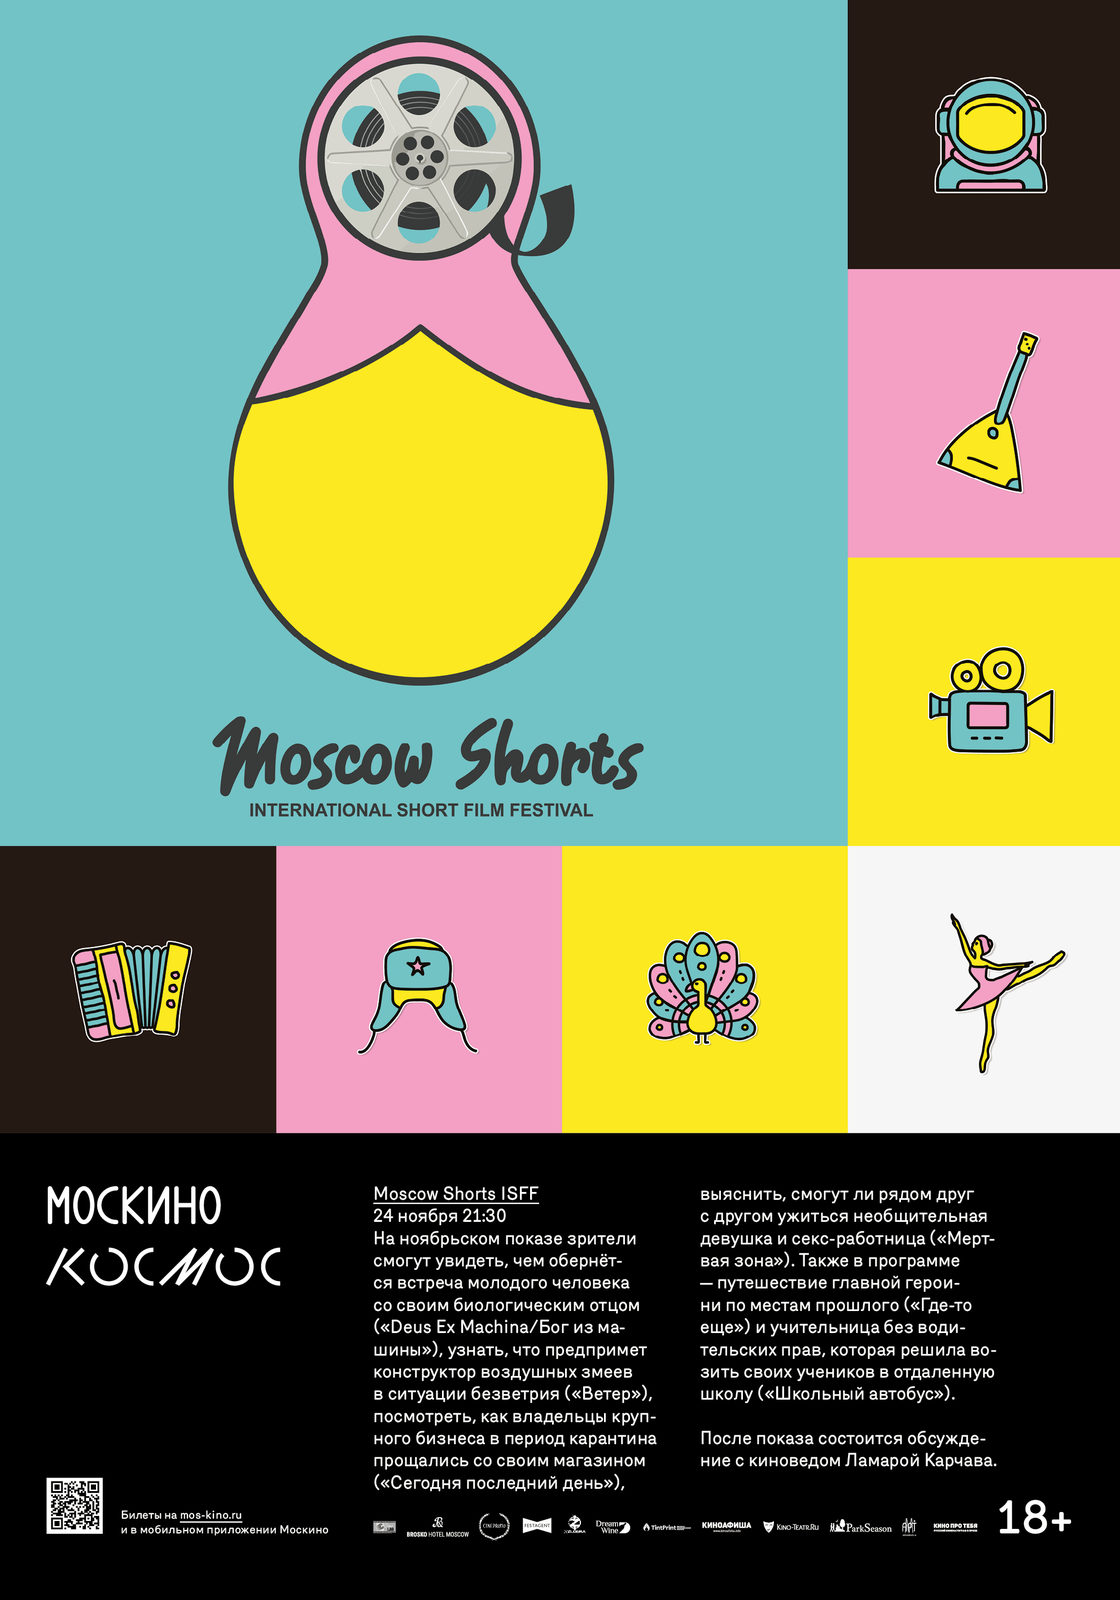 Фестиваль Moscow Shorts покажет шесть короткометражек